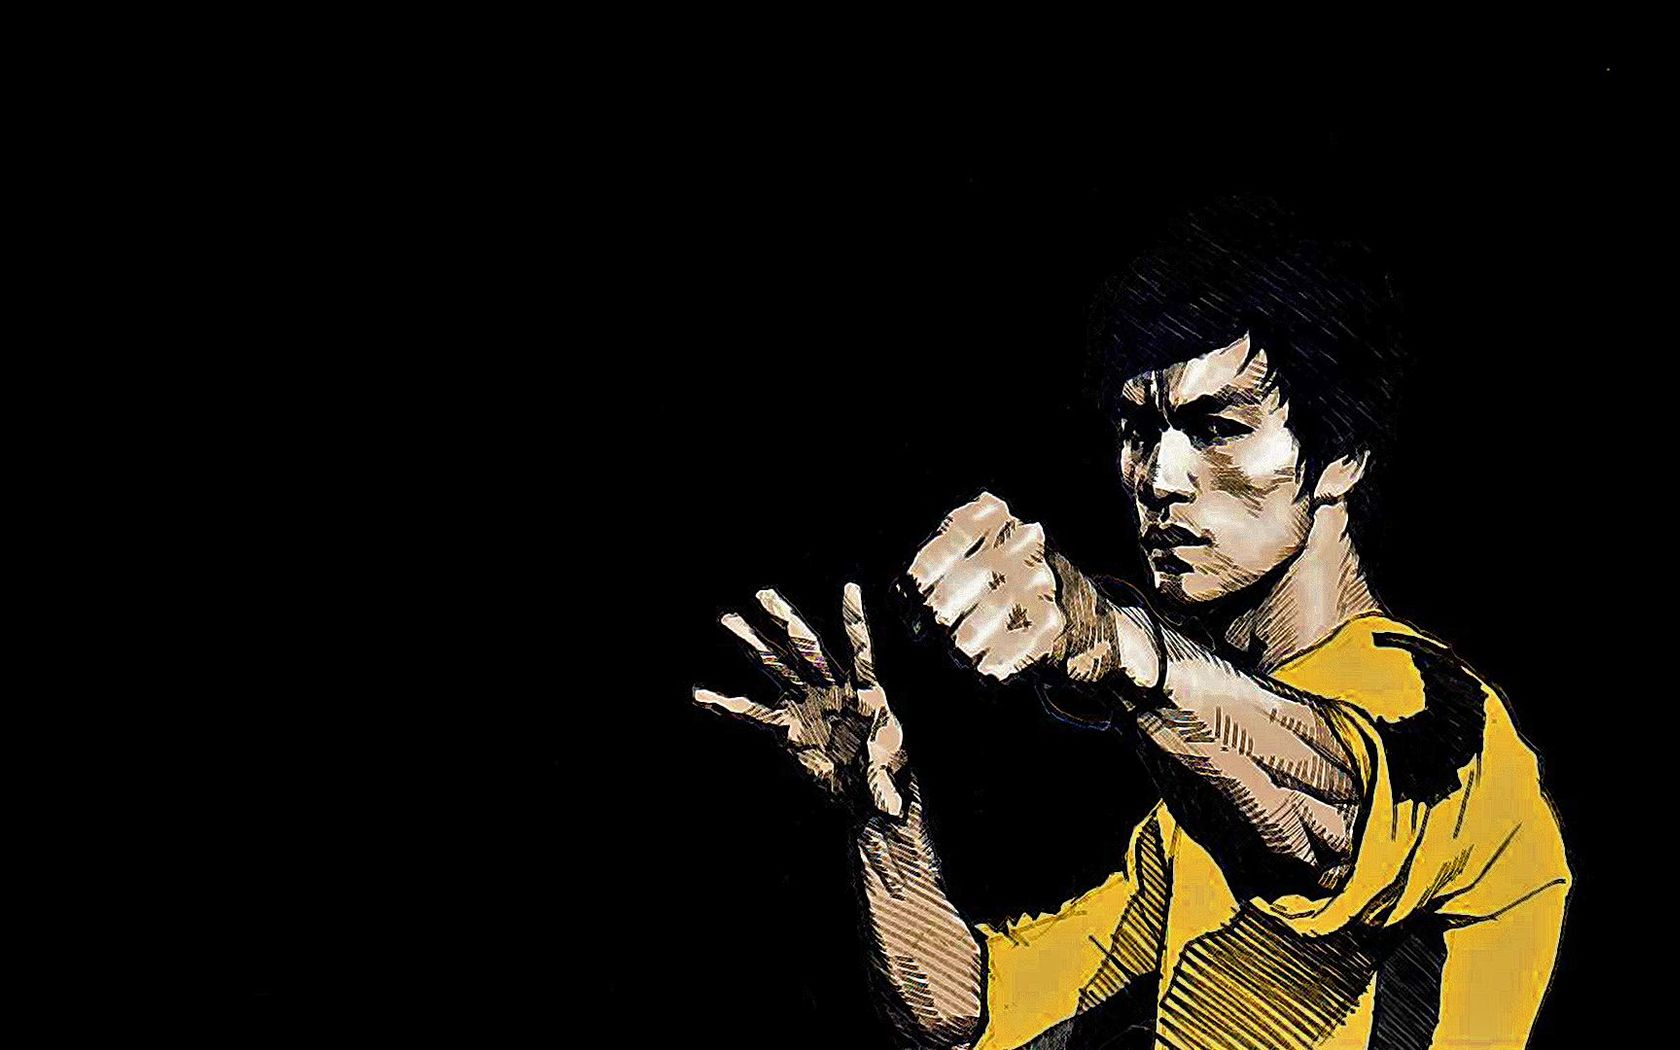 77+] Bruce Lee Wallpaper - WallpaperSafari